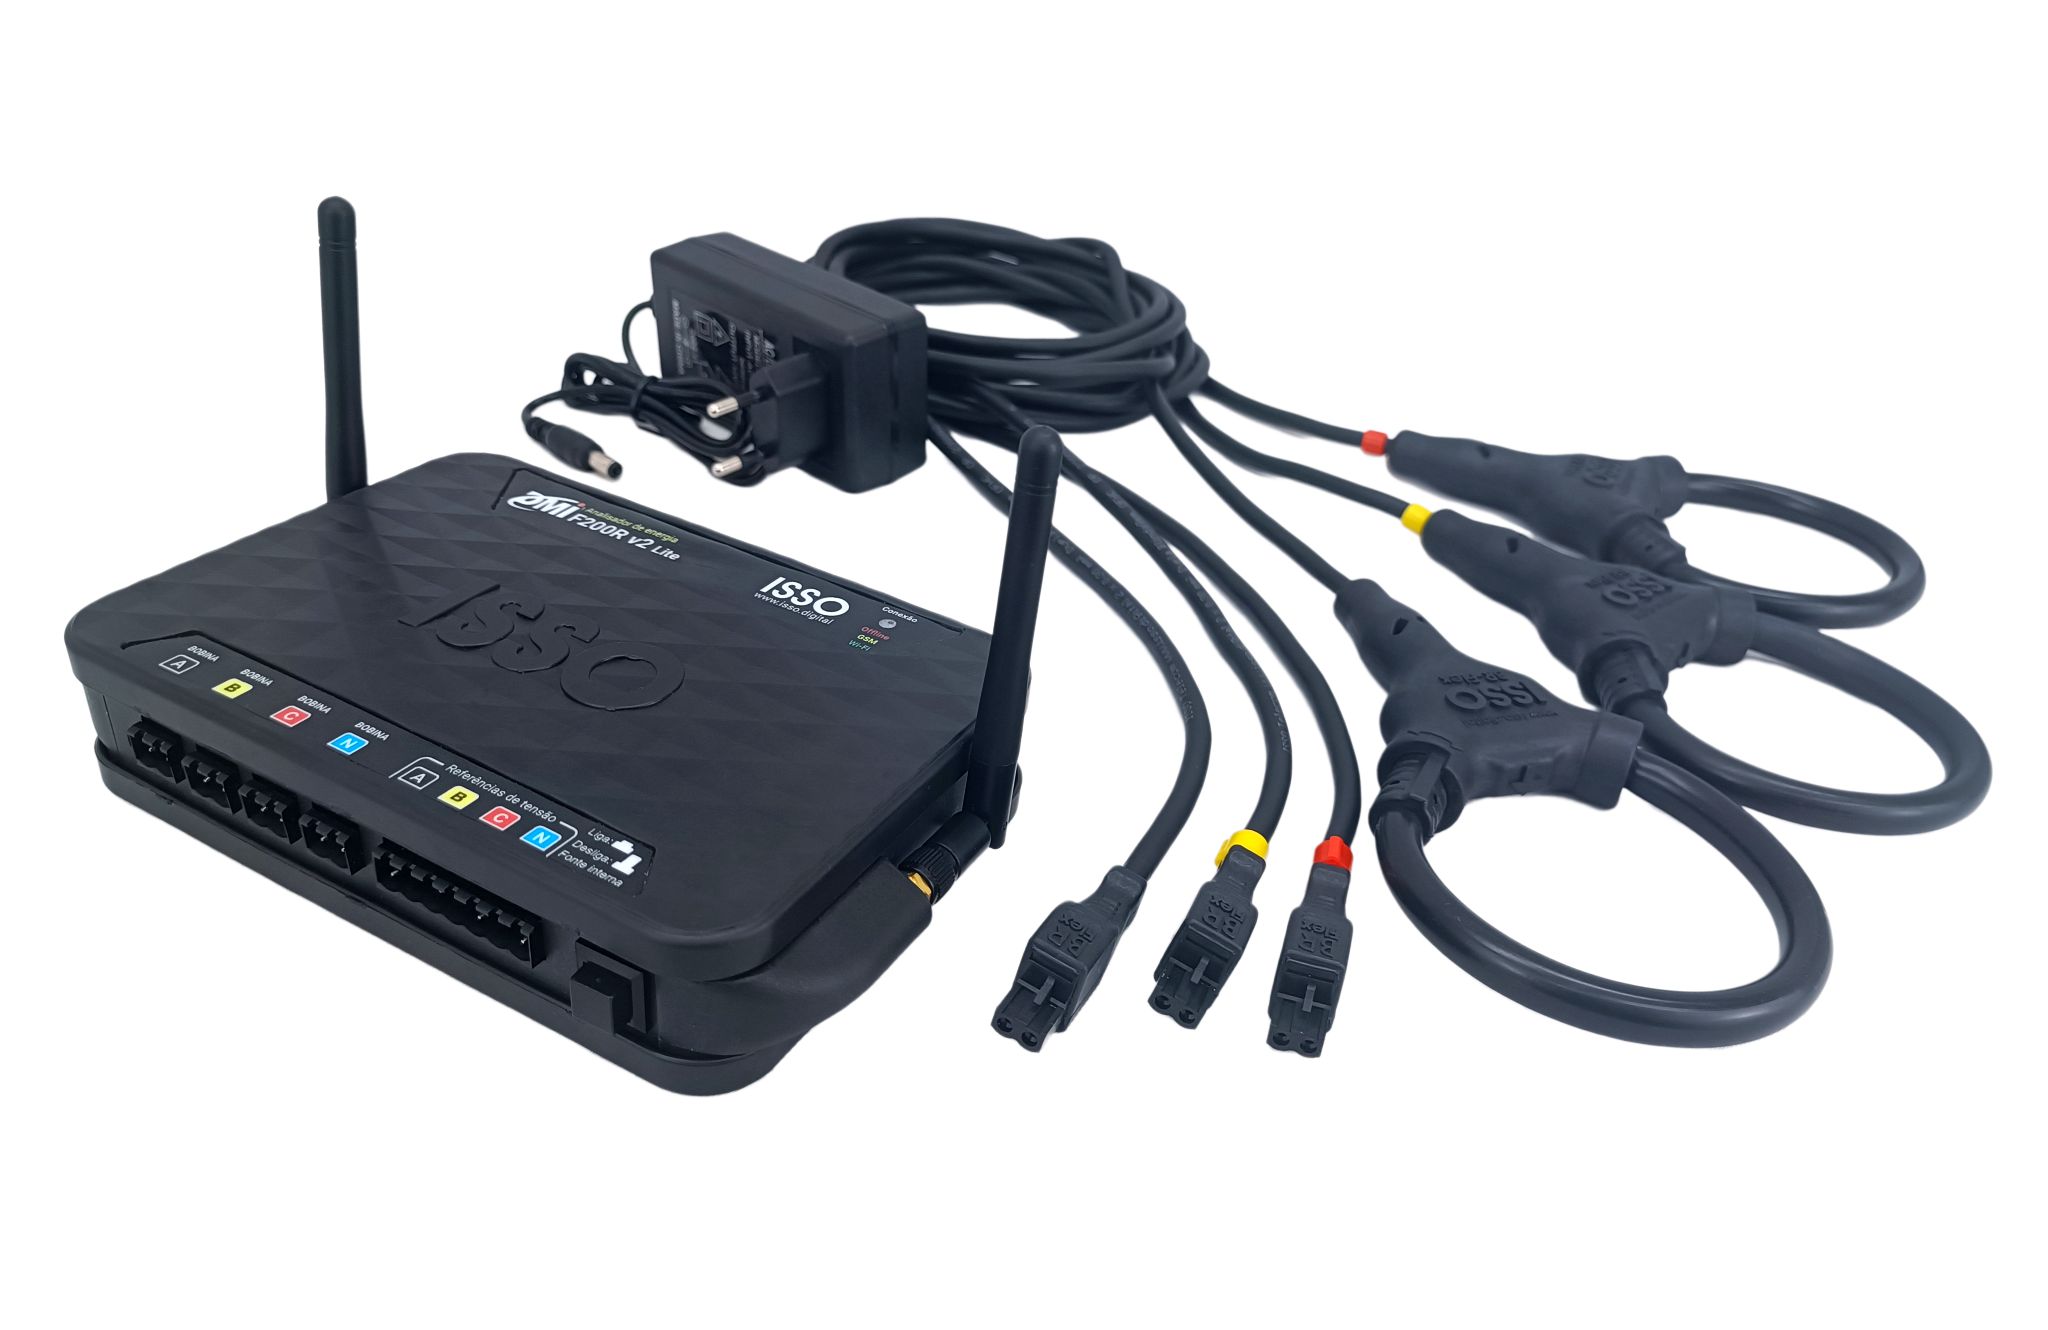 Analisador de energia DMI F200R Black Box Bidirecional, conexão Wifi, sensores de corrente flexíveis, kwh, kvar, harmônicas 